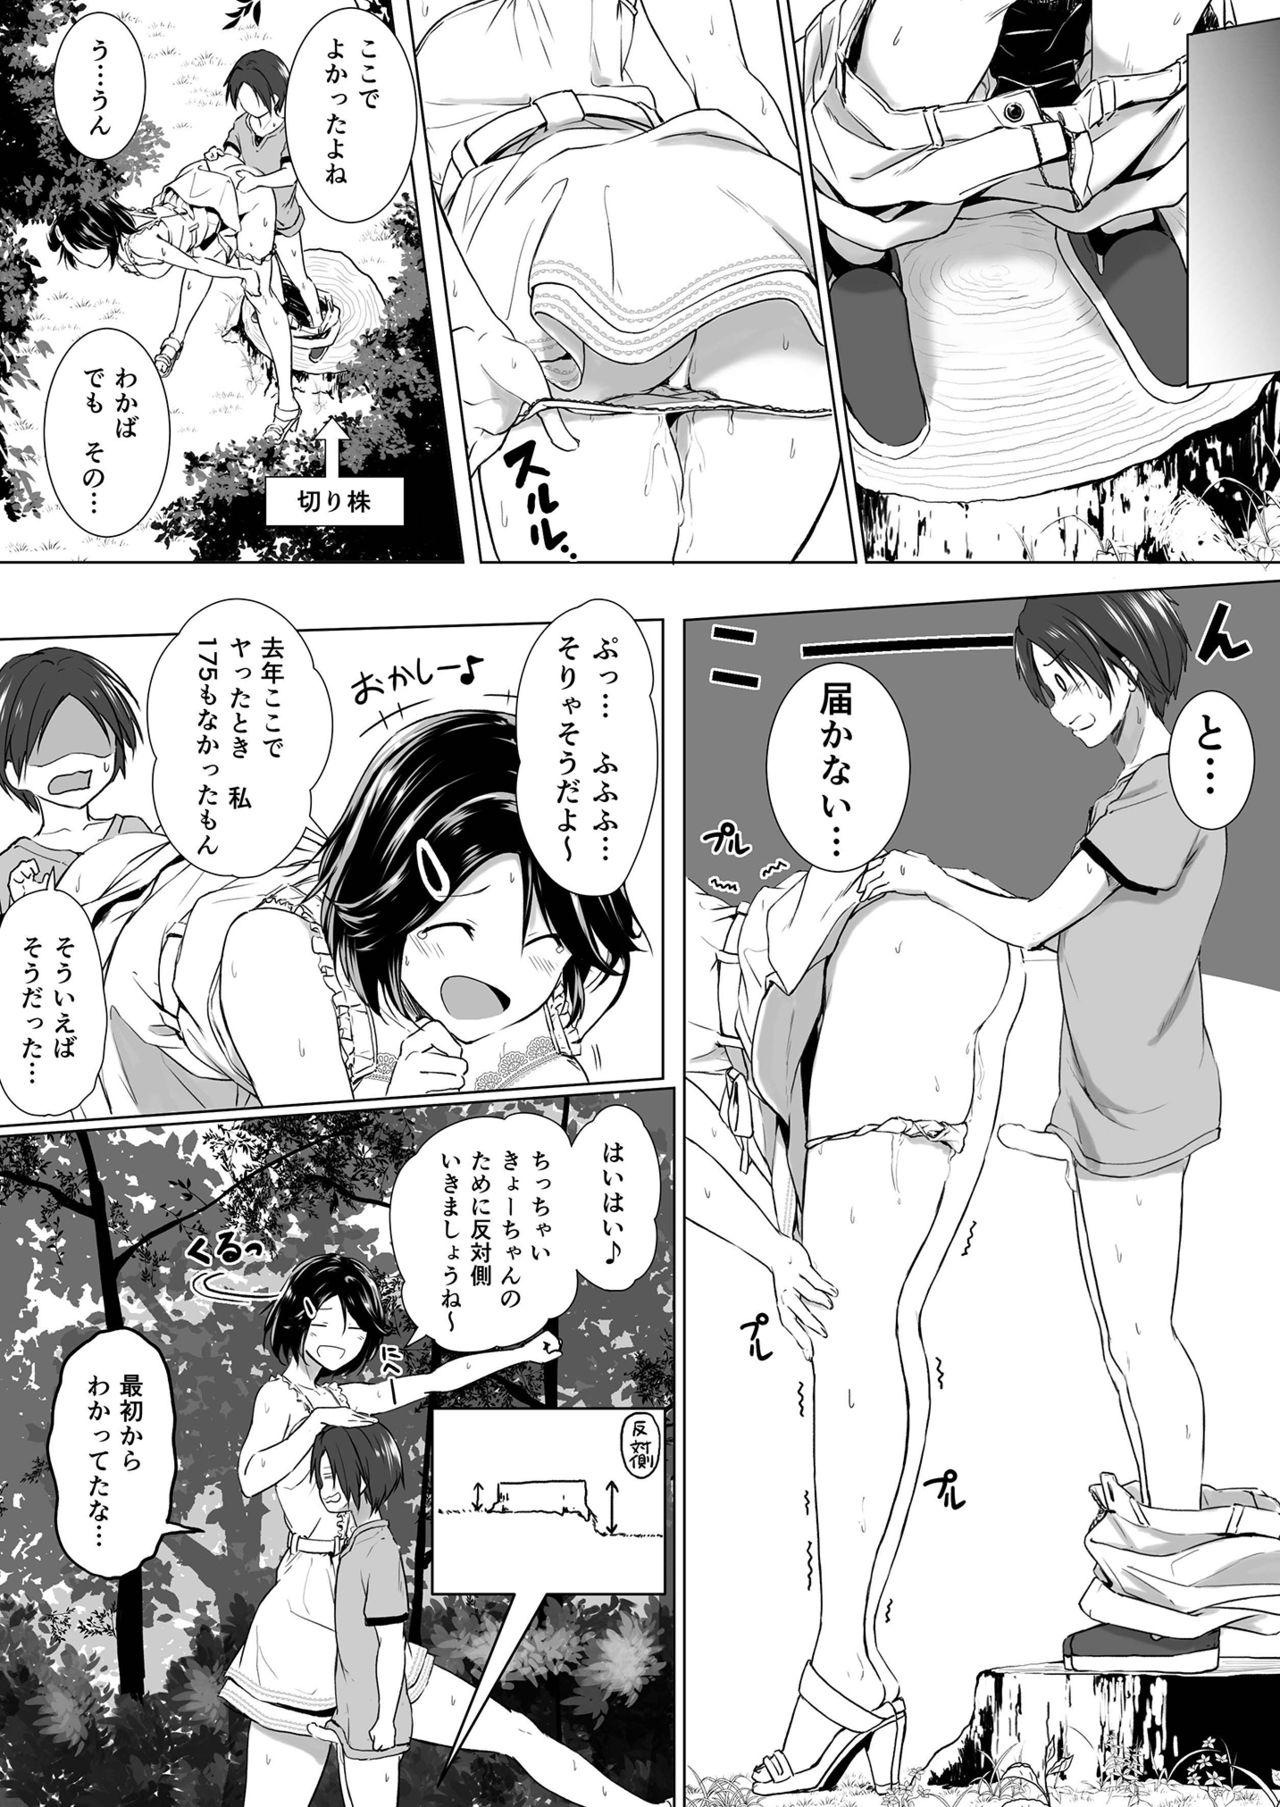 Sucking Dicks Choushin Itoko to Ecchii Koto Shiyo - Original 18 Year Old - Page 12